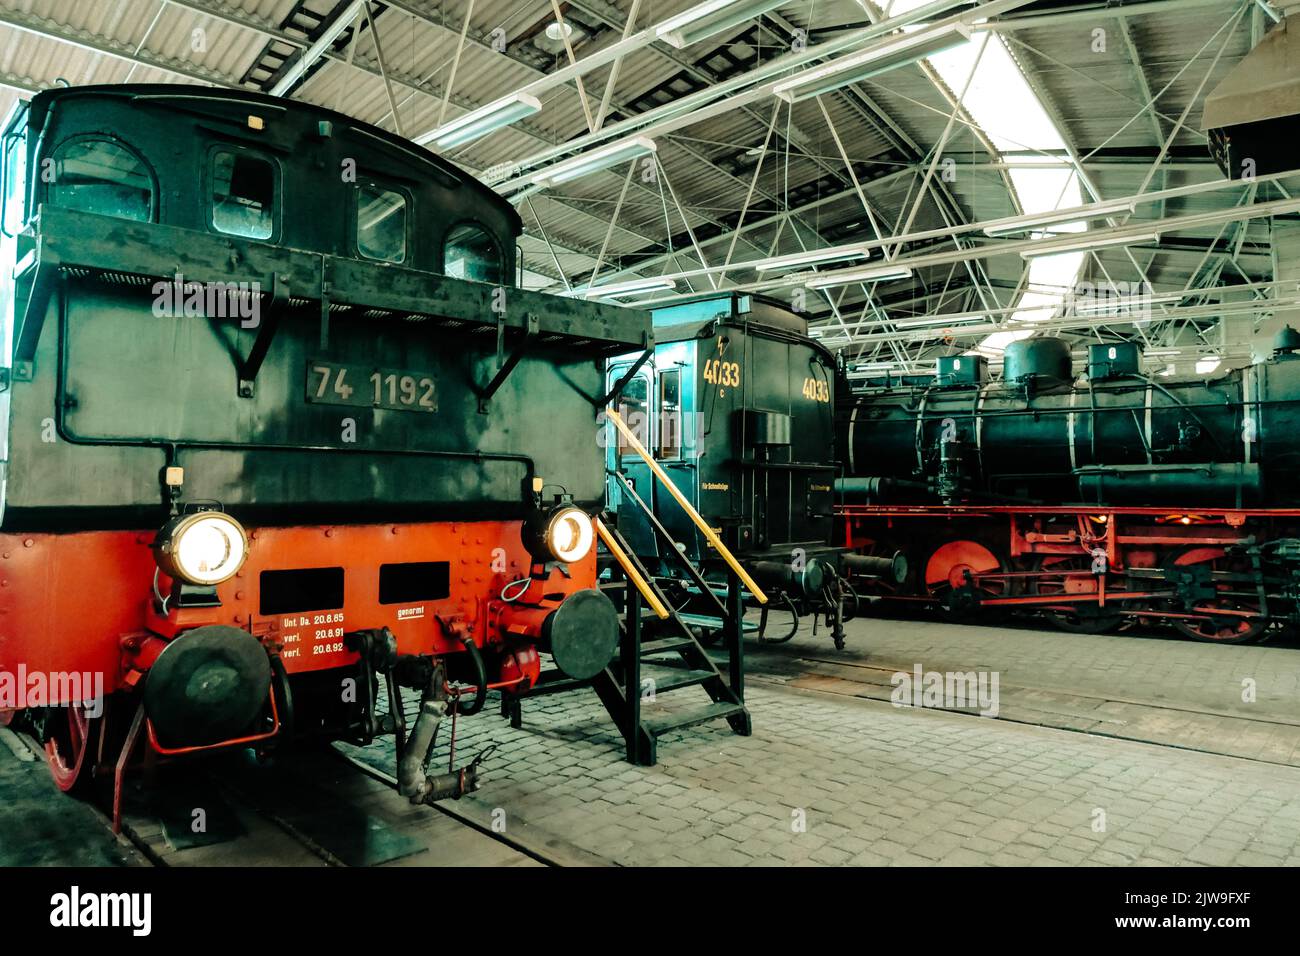 Locomotoras históricas en el Museo Ferroviario de bochum historia ferroviaria alemana Foto de stock